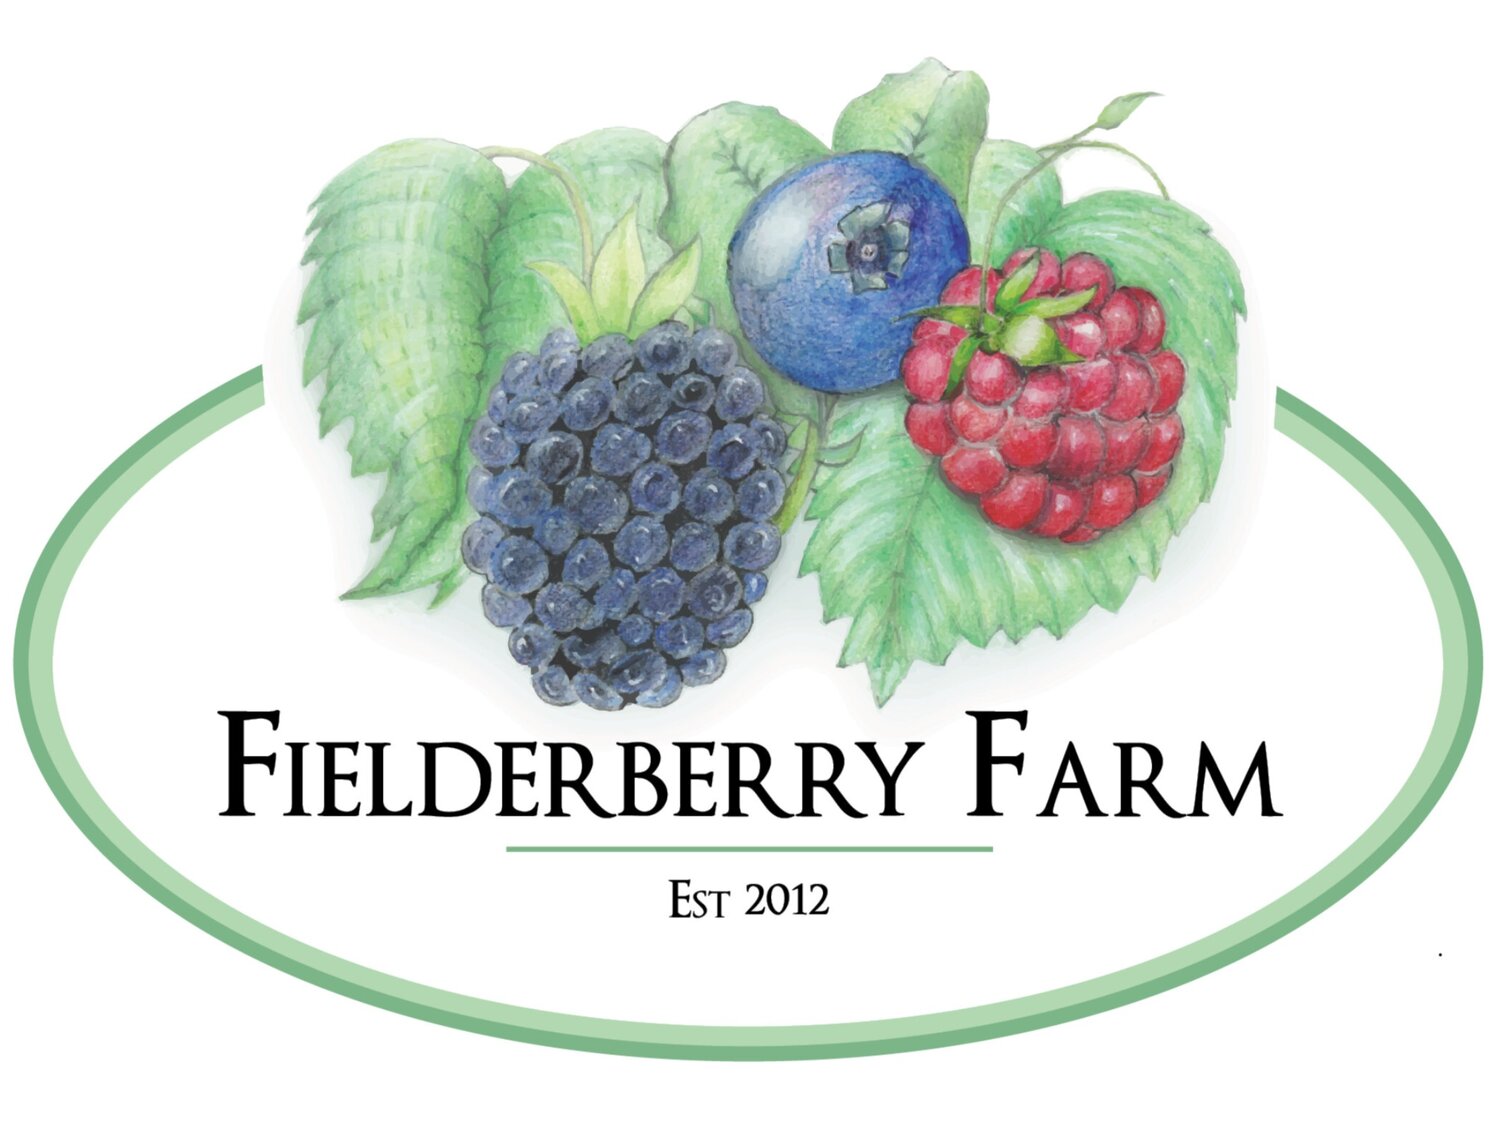 Fielderberry Farm